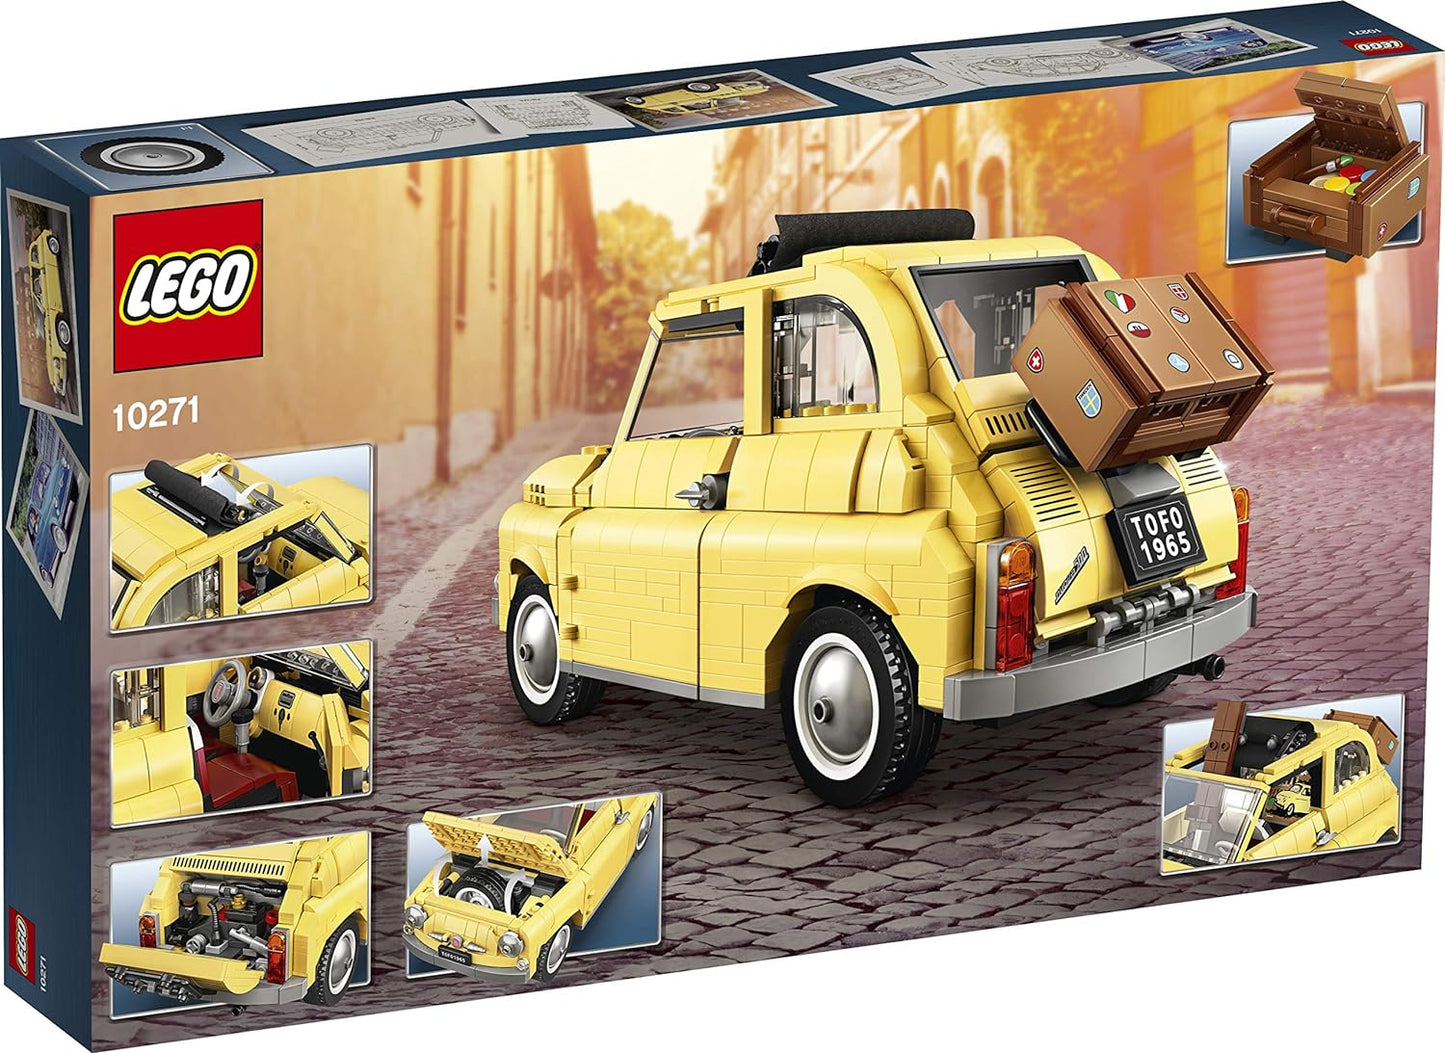 LEGO Creator Expert - Fiat 500 (10271)